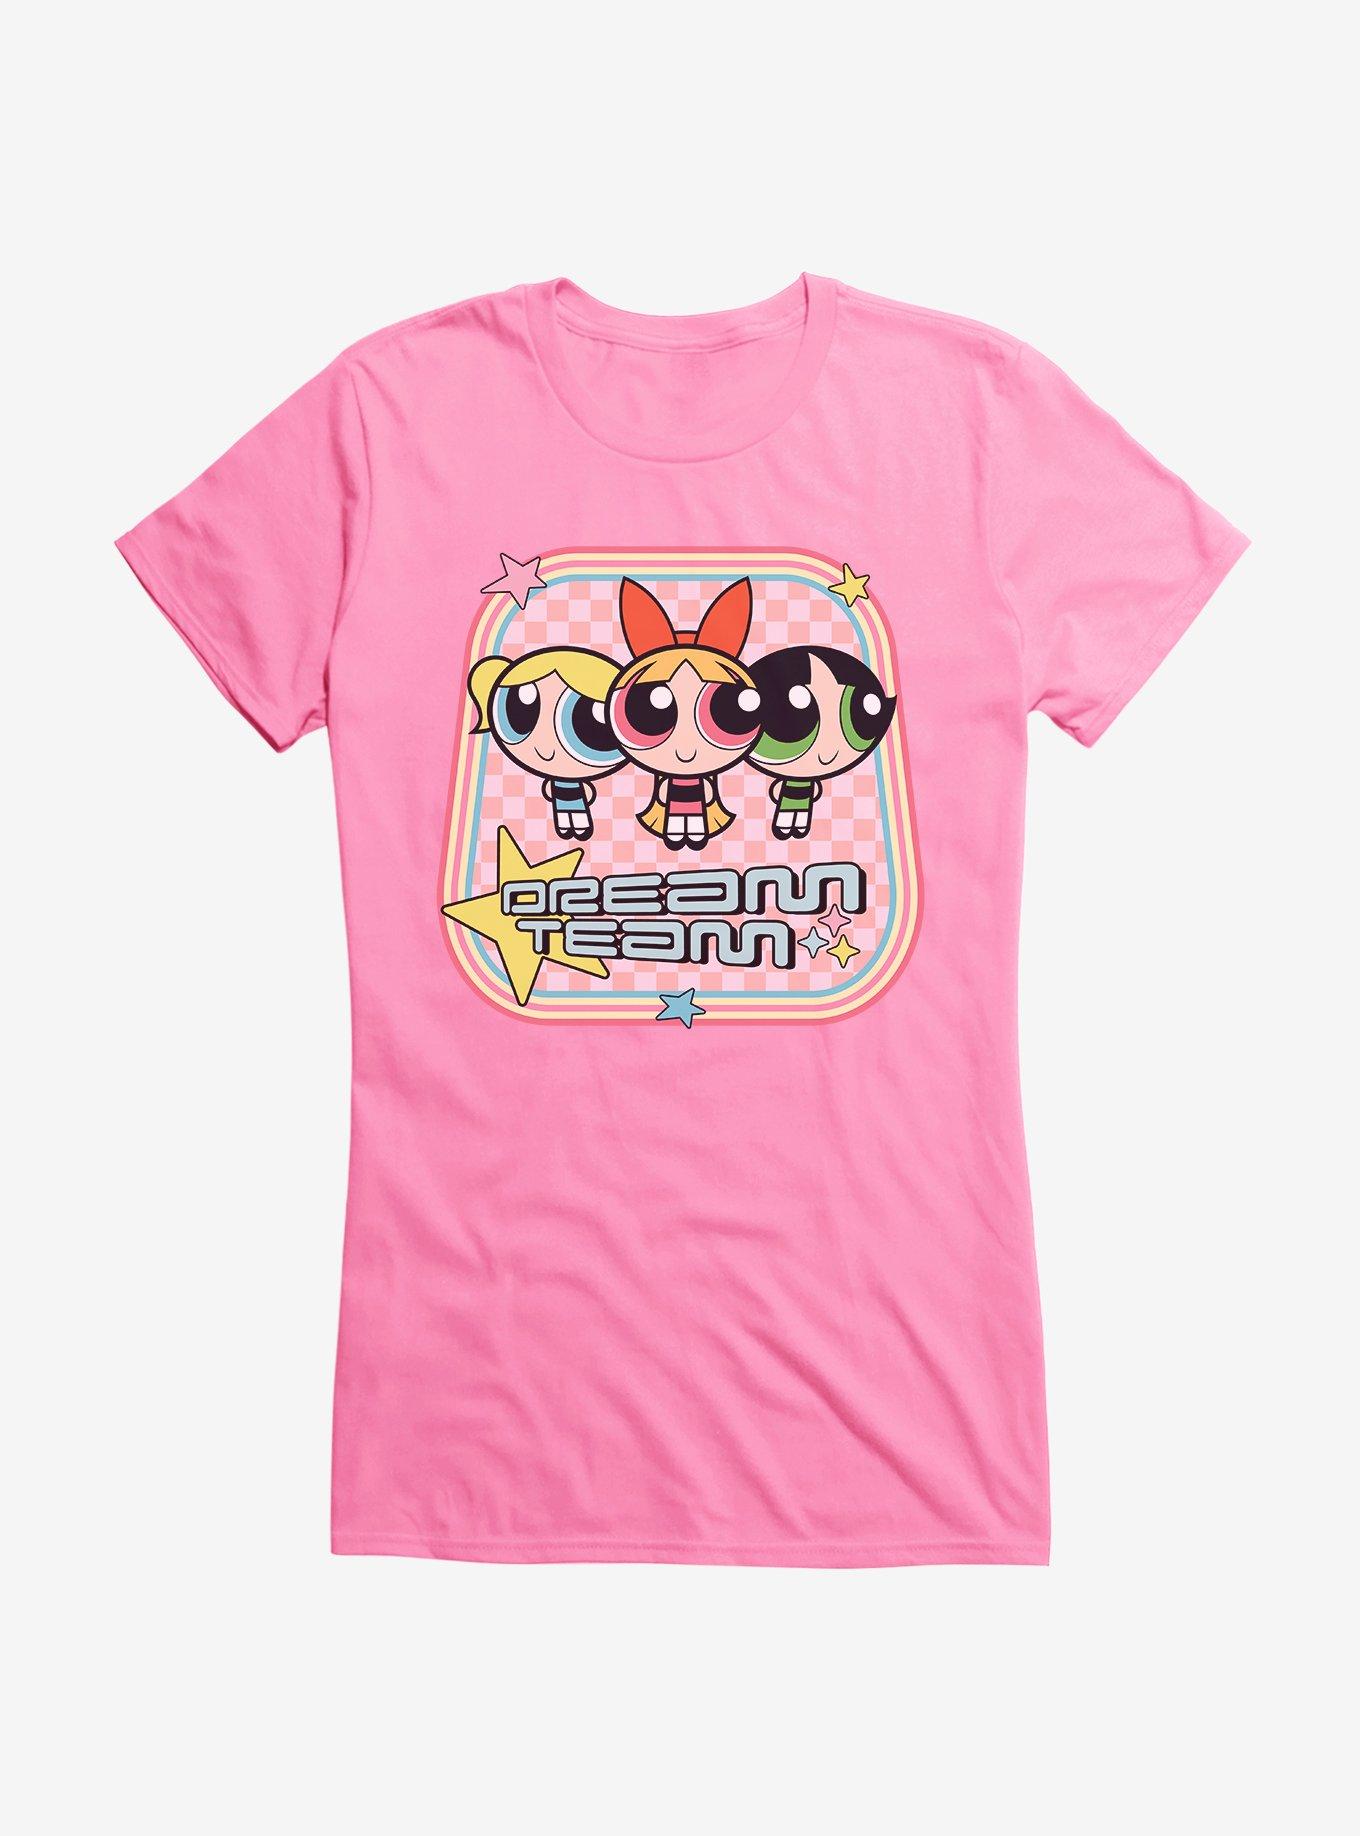 Powerpuff Girls Dream Team T-Shirt